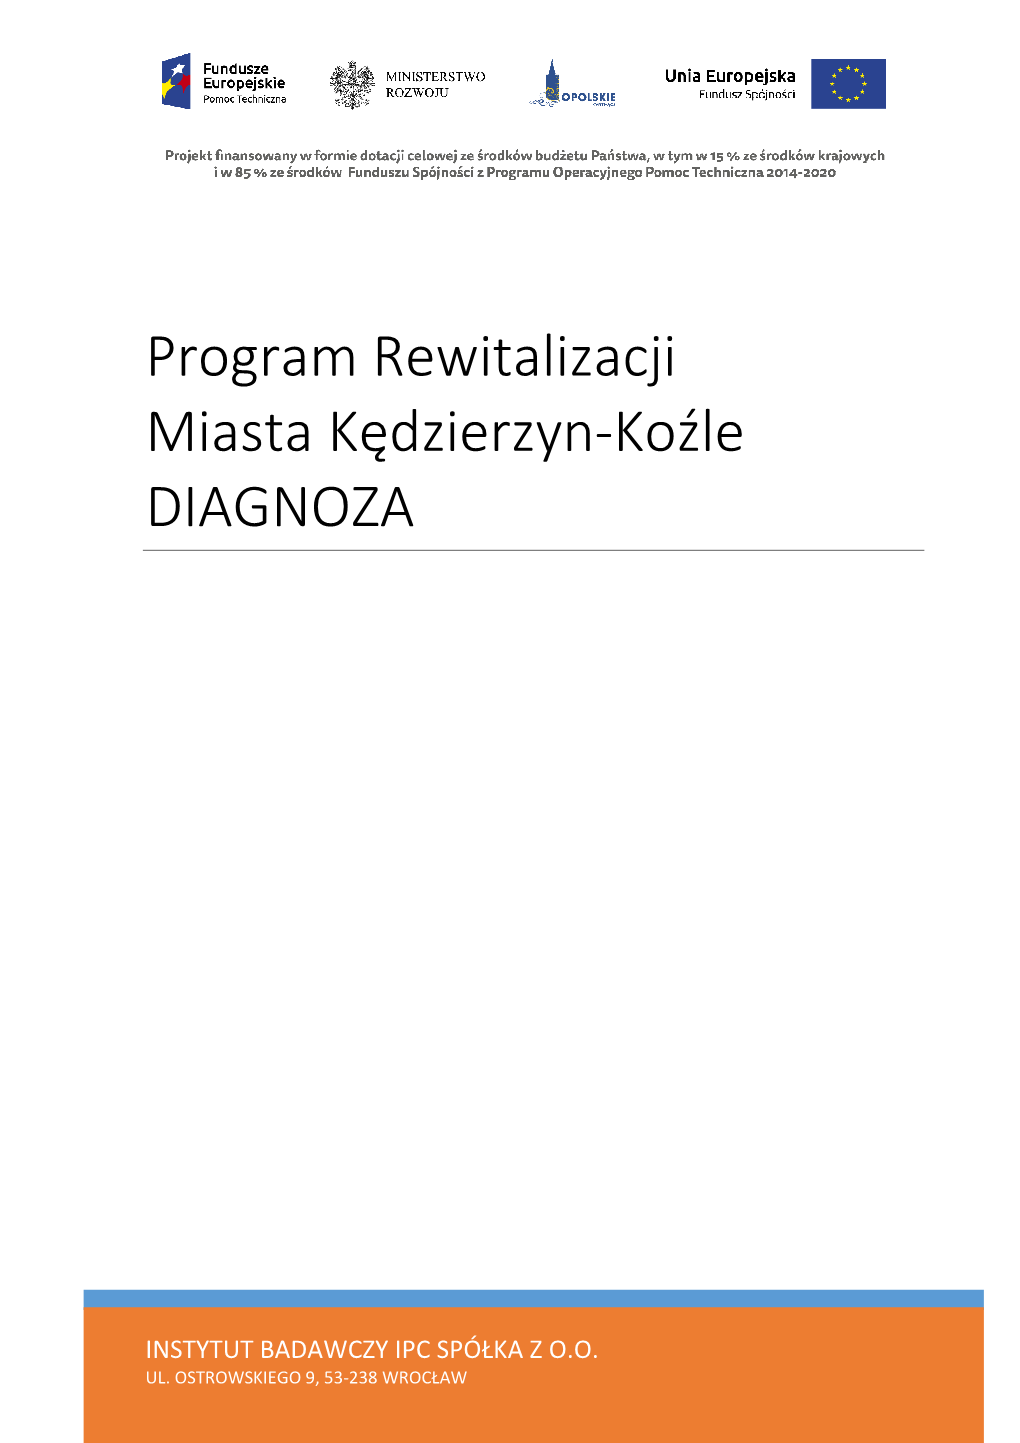 Program Rewitalizacji Miasta Kędzierzyn-Koźle DIAGNOZA